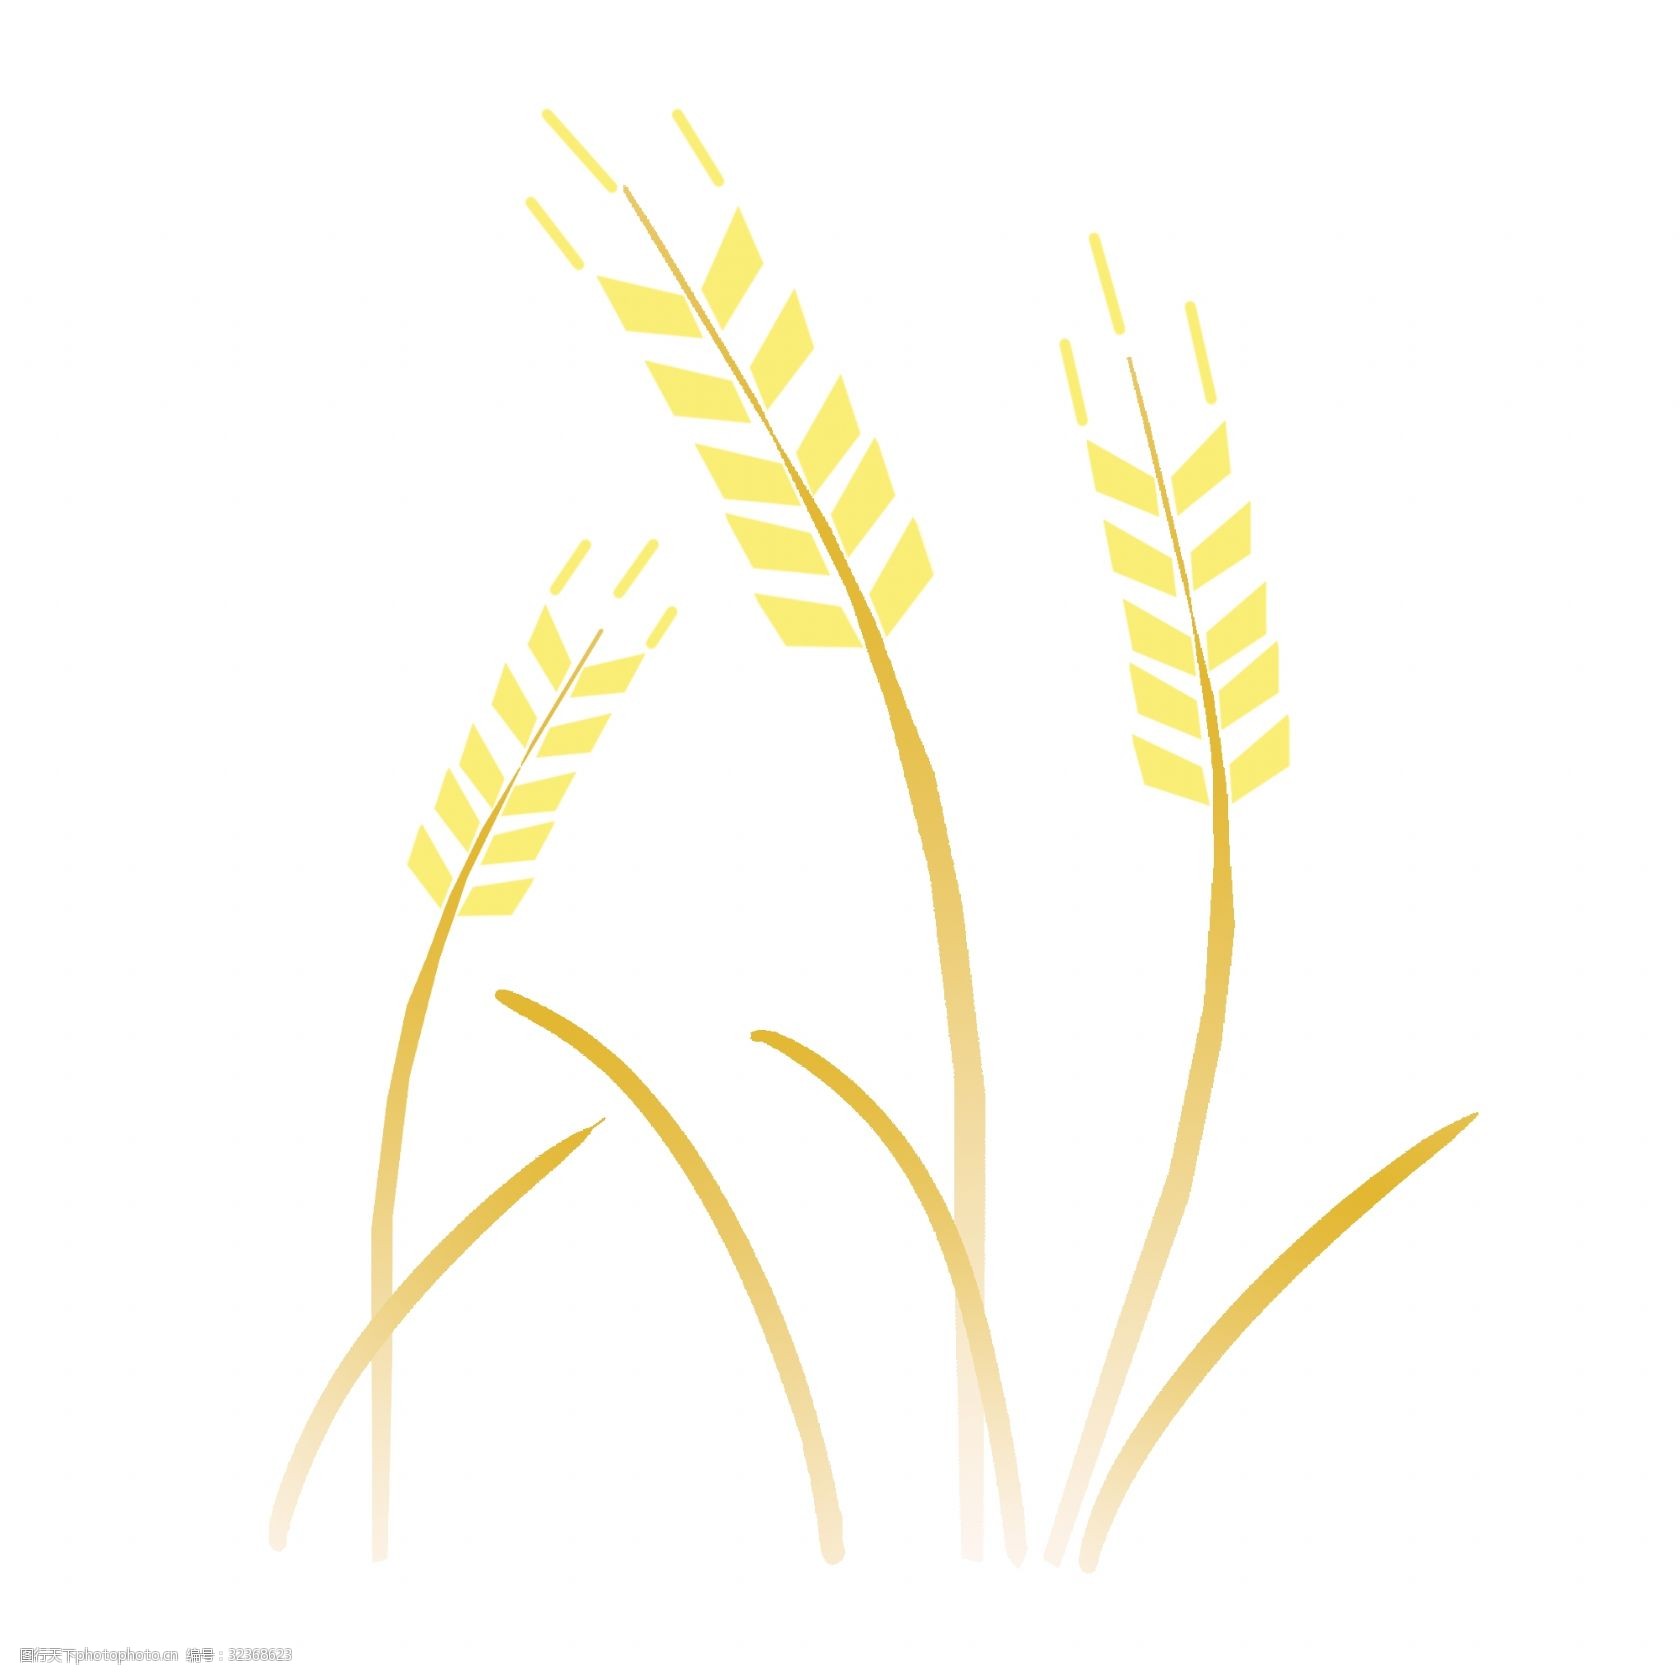 成熟的麦穗 黄色麦穗 三根麦穗 金灿灿的麦穗 分手季节 卡通植物 农